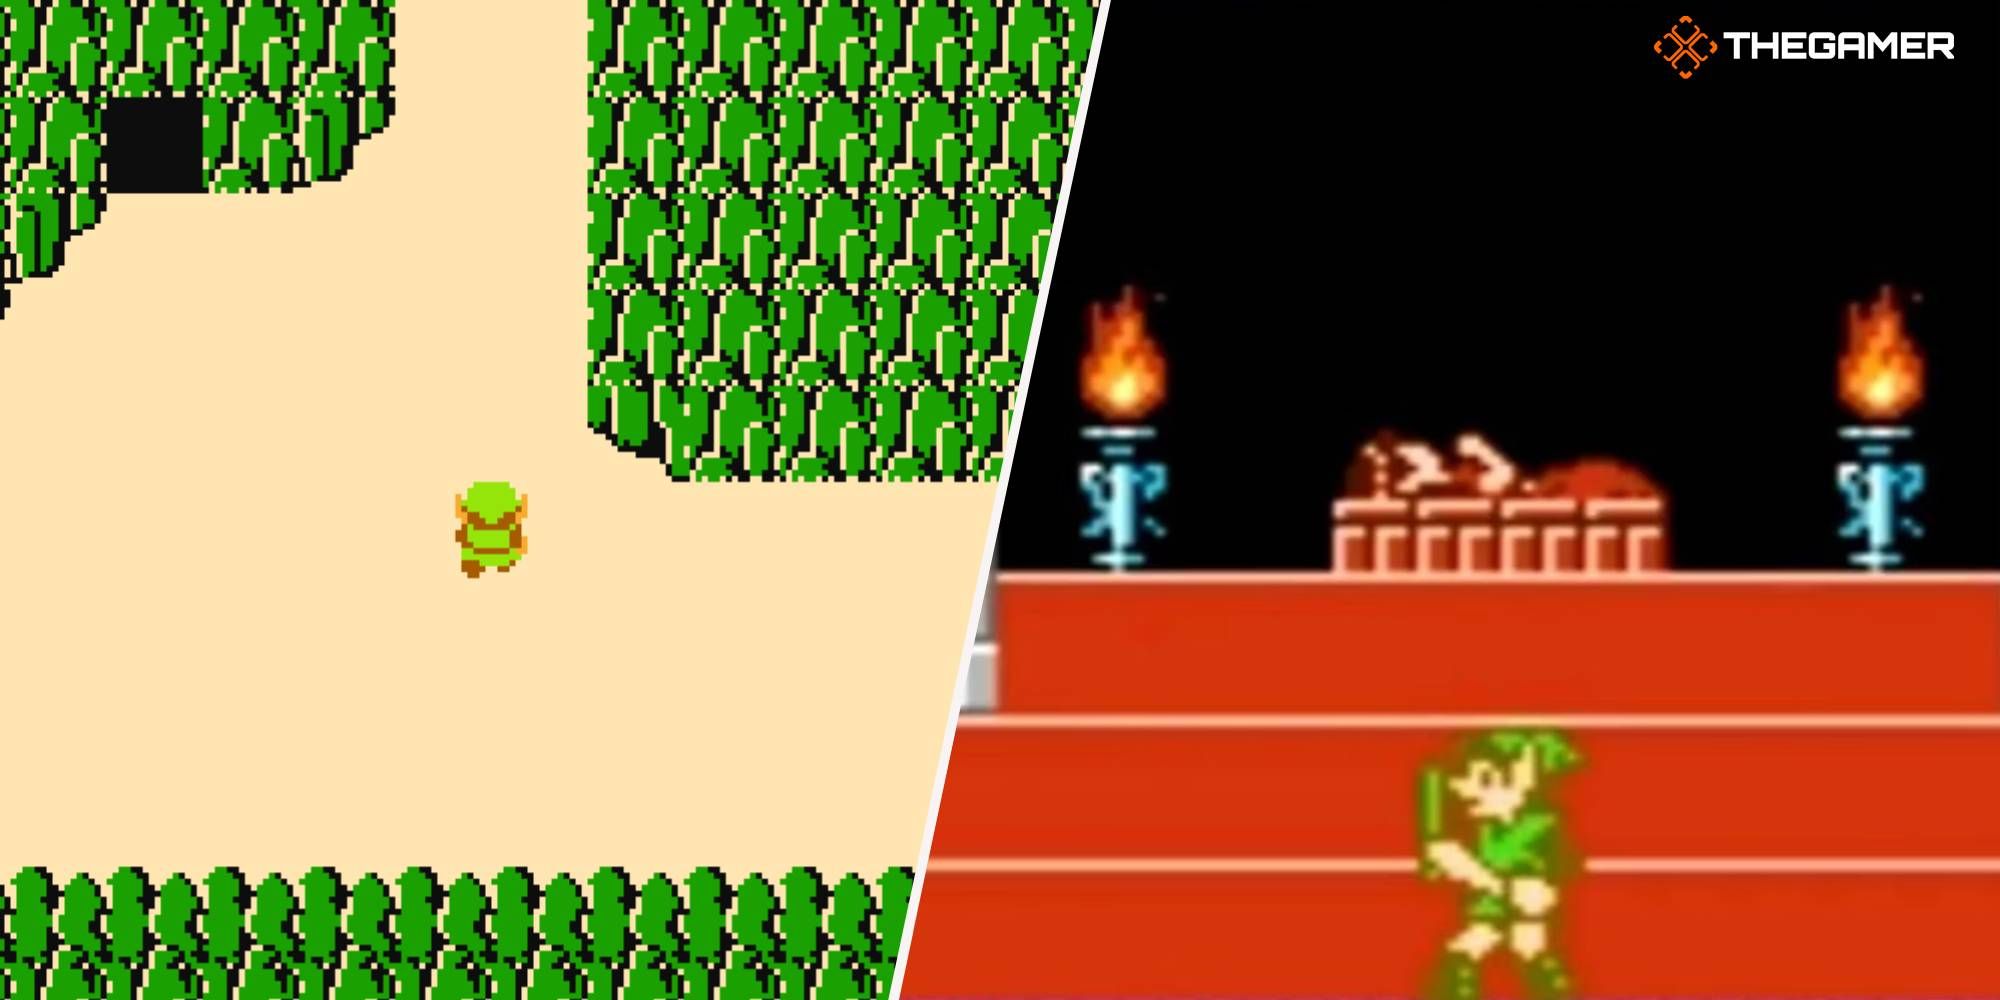 The Legend of Zelda's Link in the overworld and Adventure of Link's near the sleeping Princess Zelda.